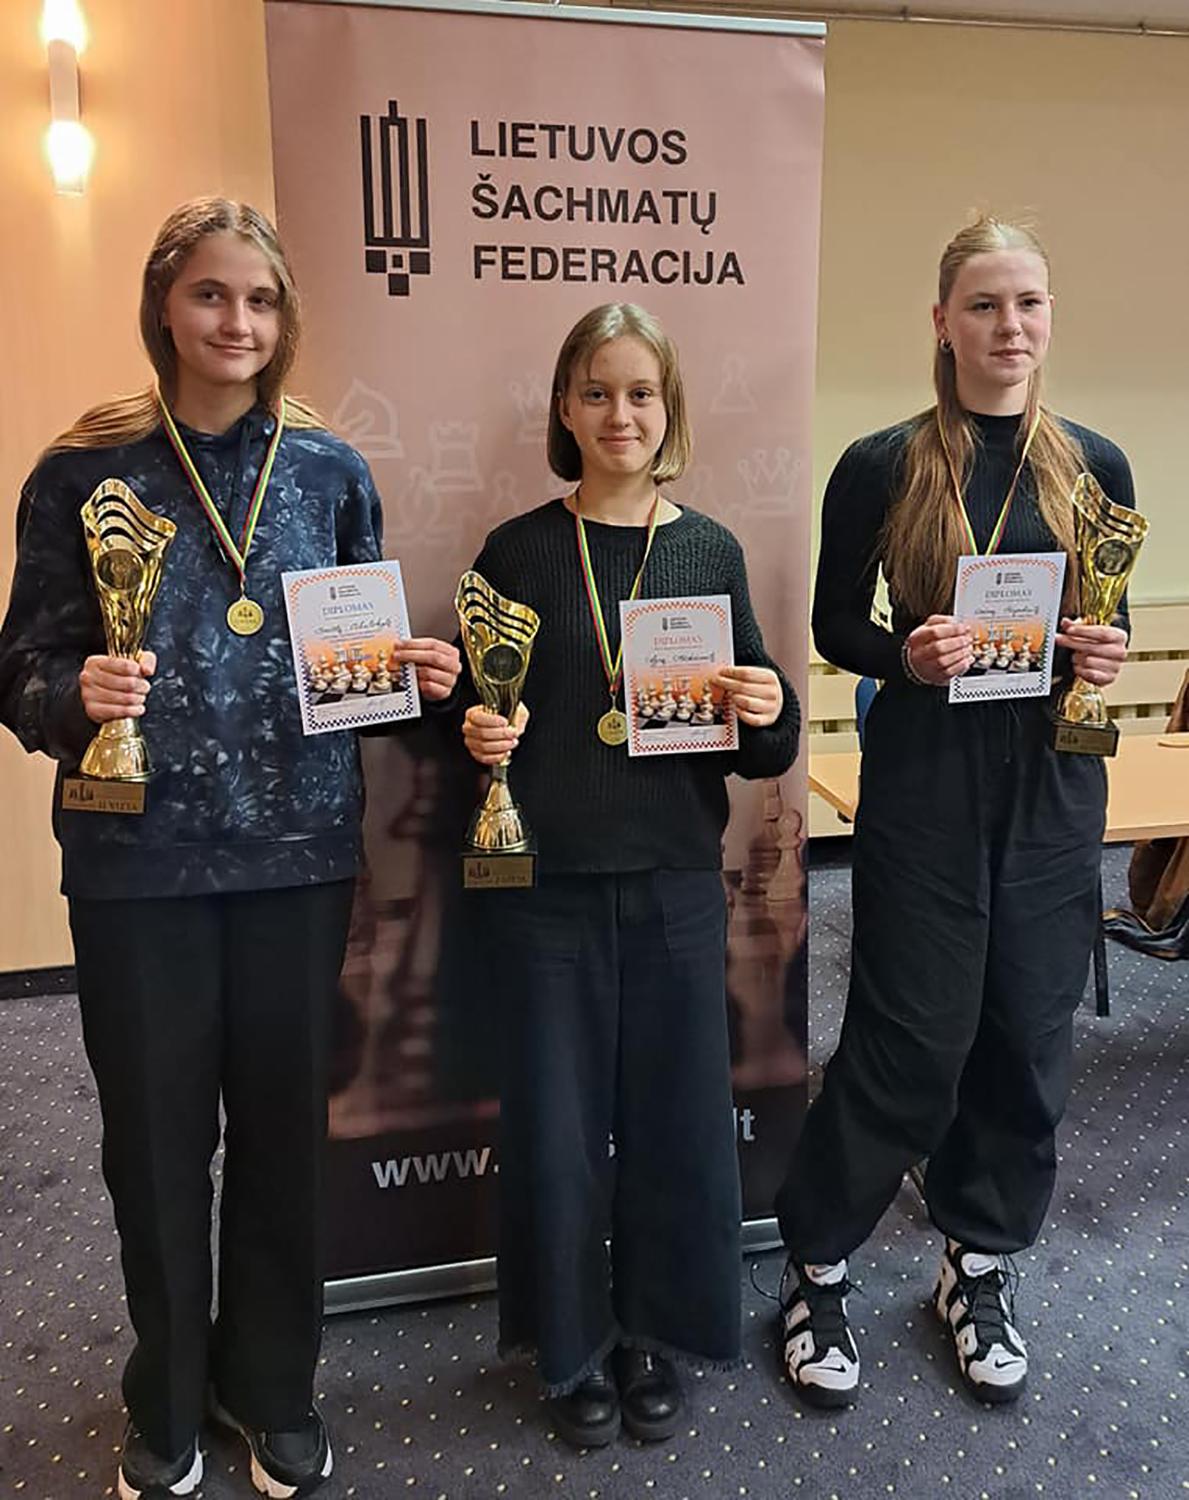 Atstovaus Lietuvai Pasaulio čempionate / Agnė Mickūnaitė (viduryje) atstovaus Lietuvai Pasaulio čempionate.